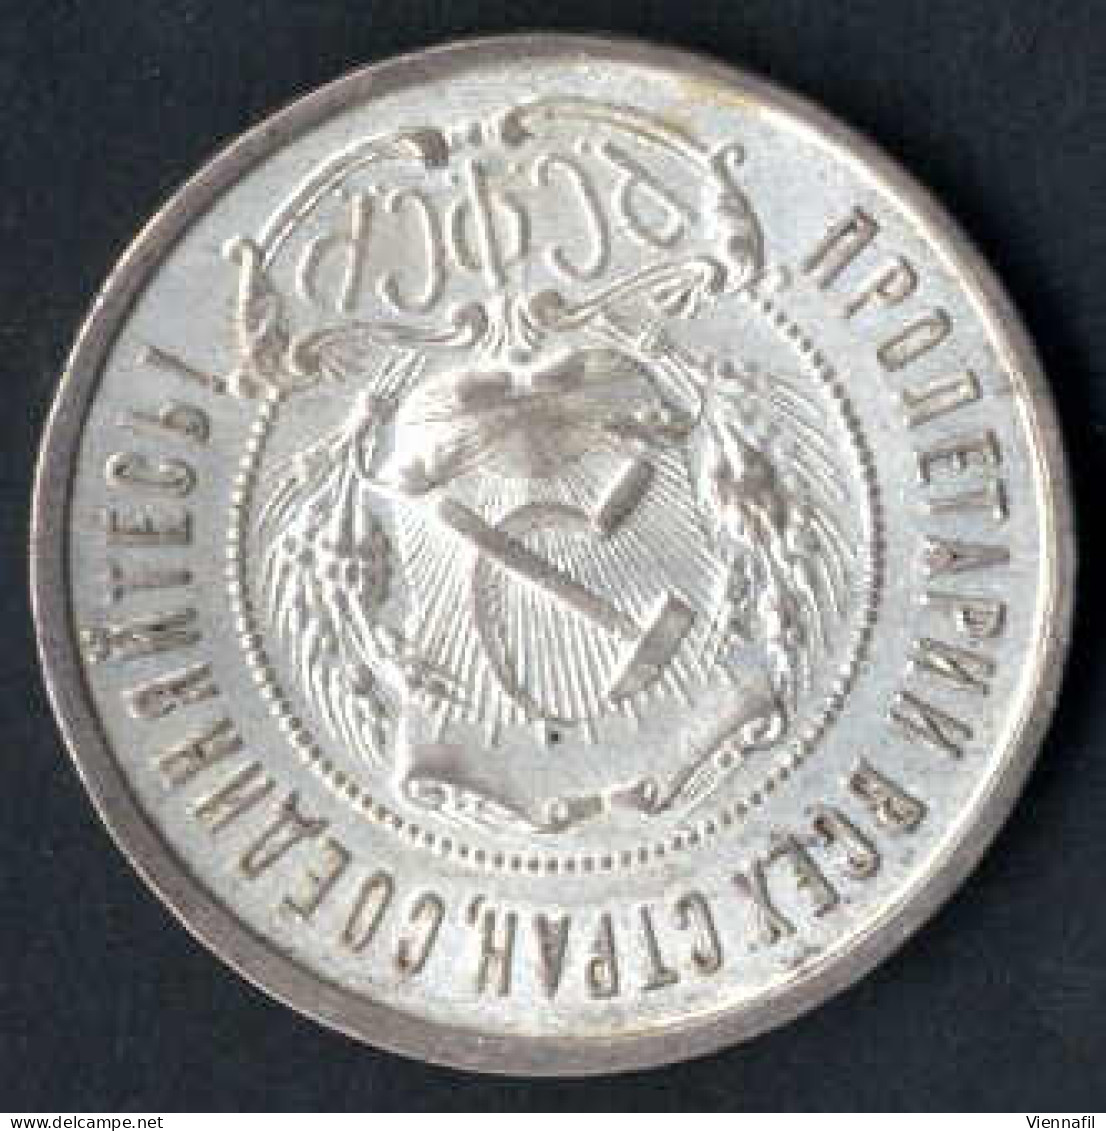 ½, 2, 15, 20, 50 Kopeken und 1 Rubel 1922/27, Lot mit sechs Münzen, davon vier Silbermünze, sehr schön bis vorzüglich-, 